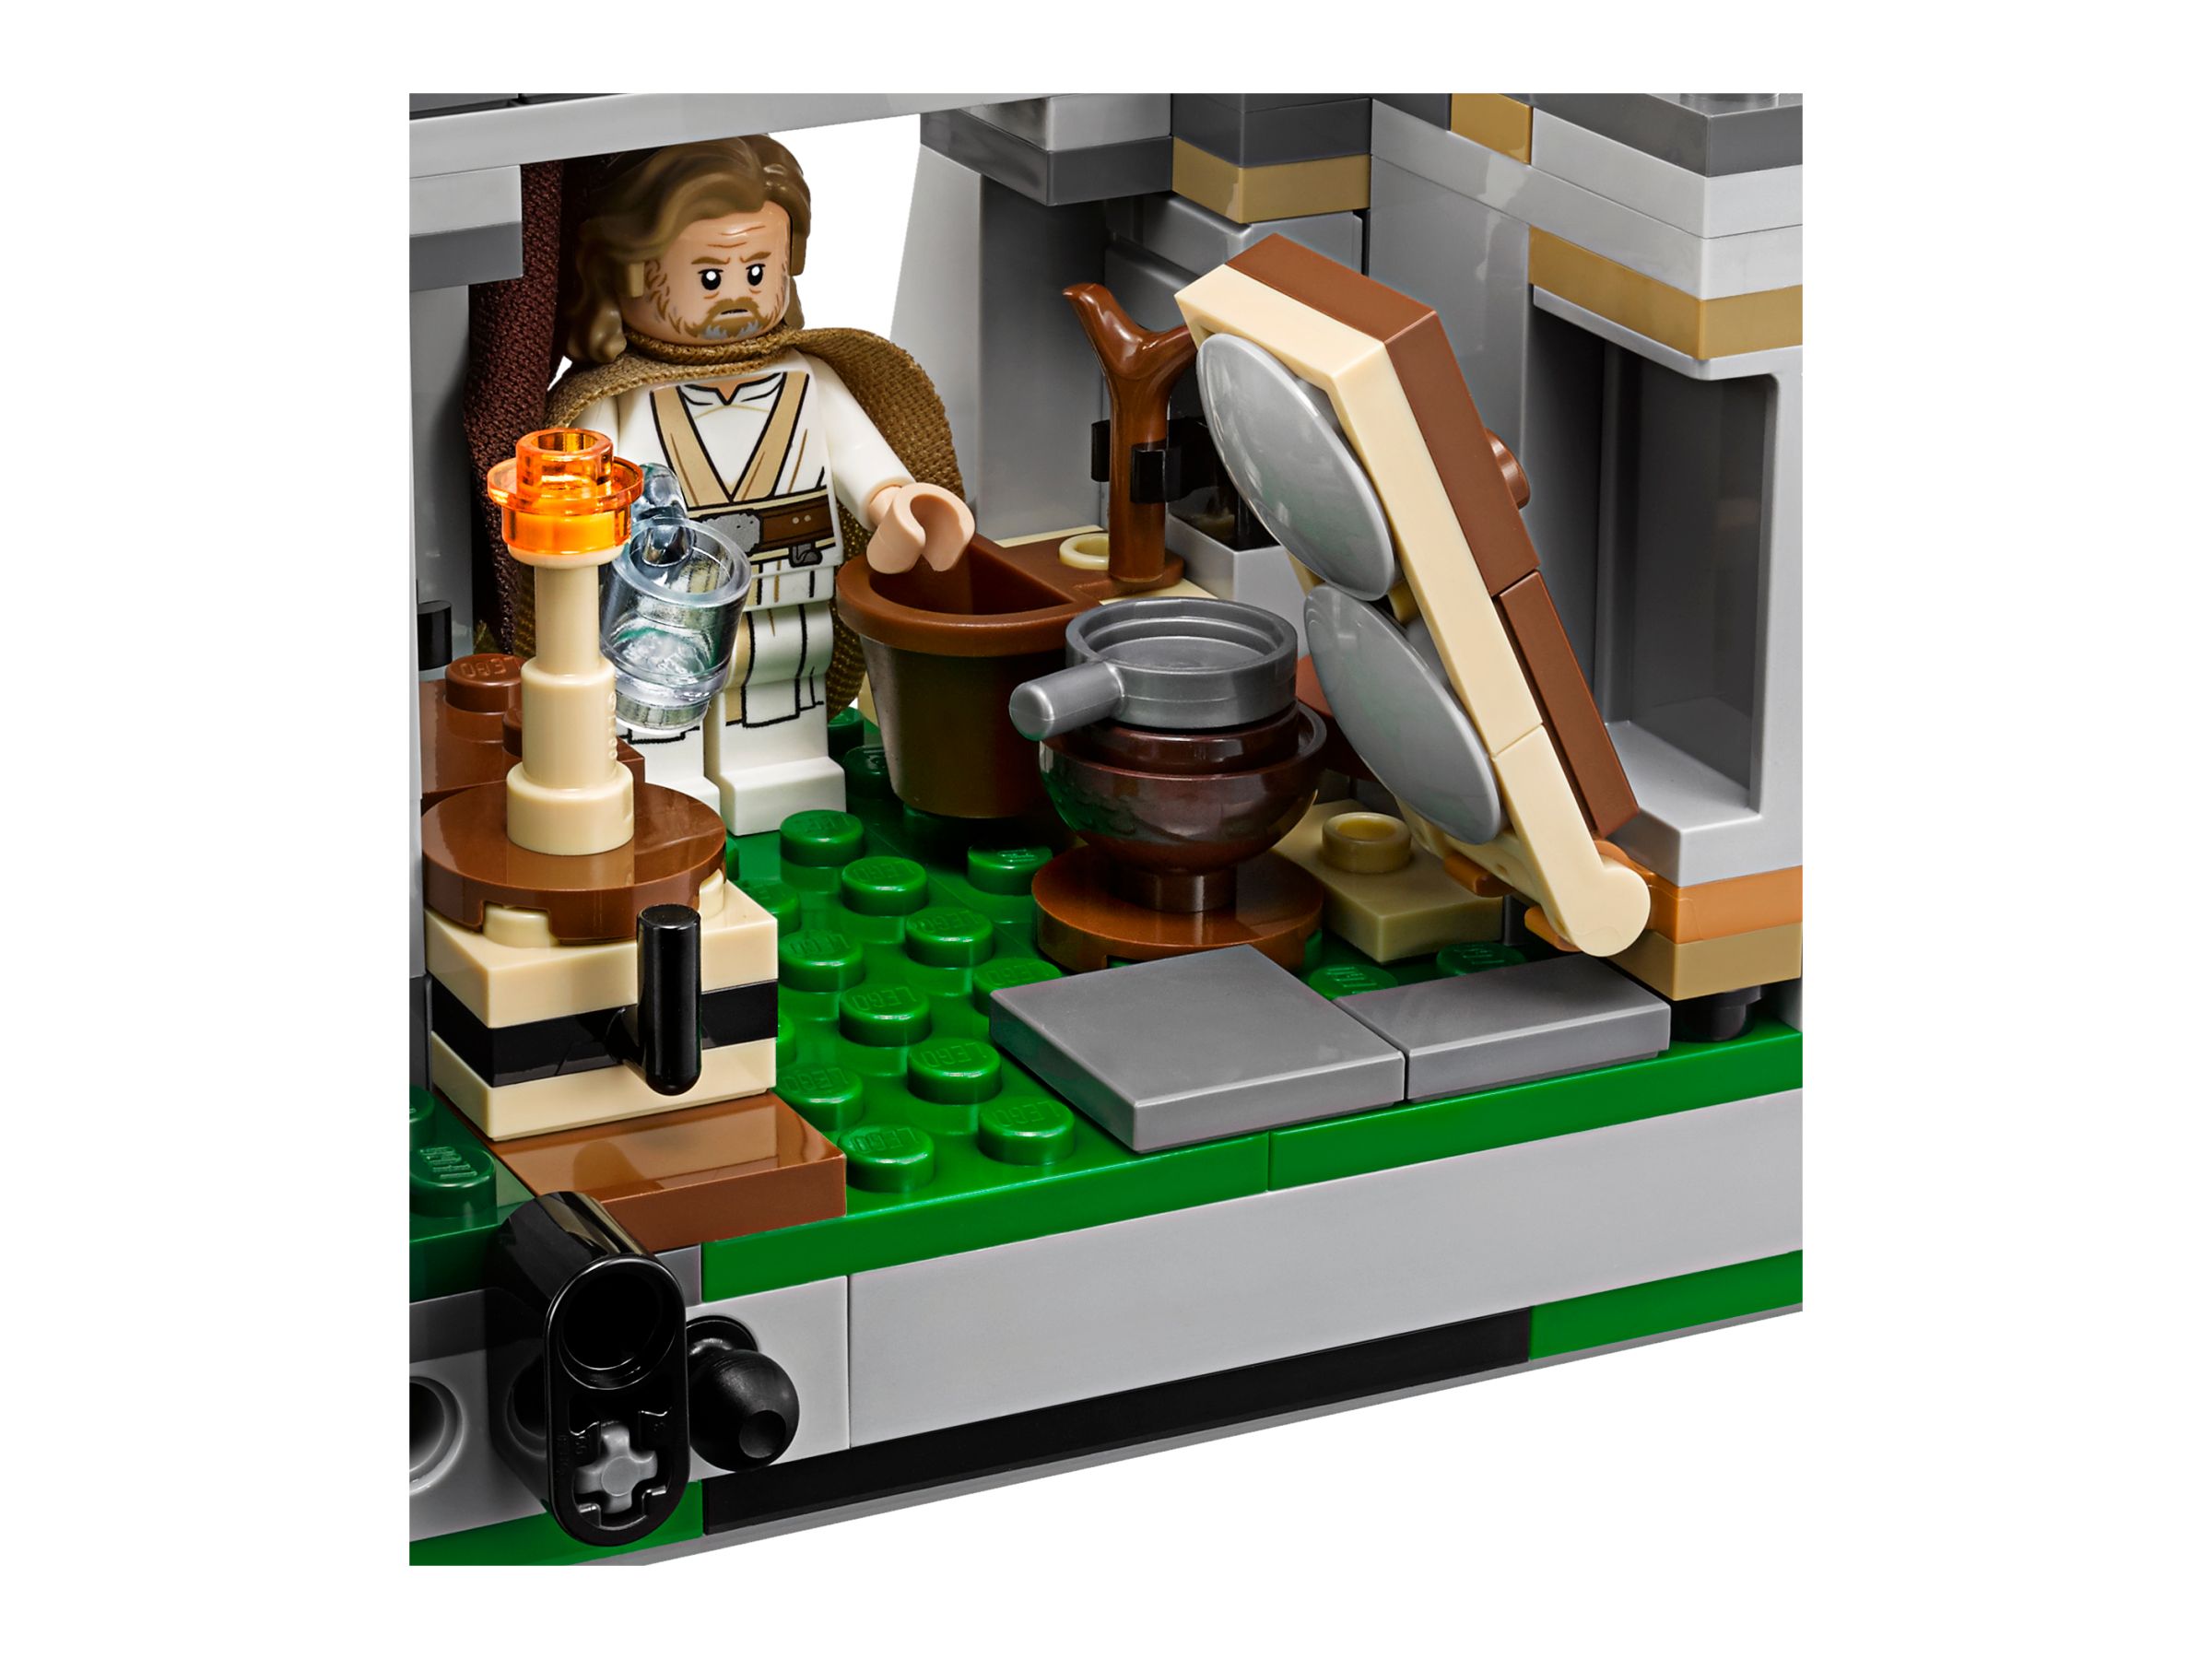 LEGO Star Wars 75200 Ahch-To Island™ Training LEGO_75200_alt6.jpg